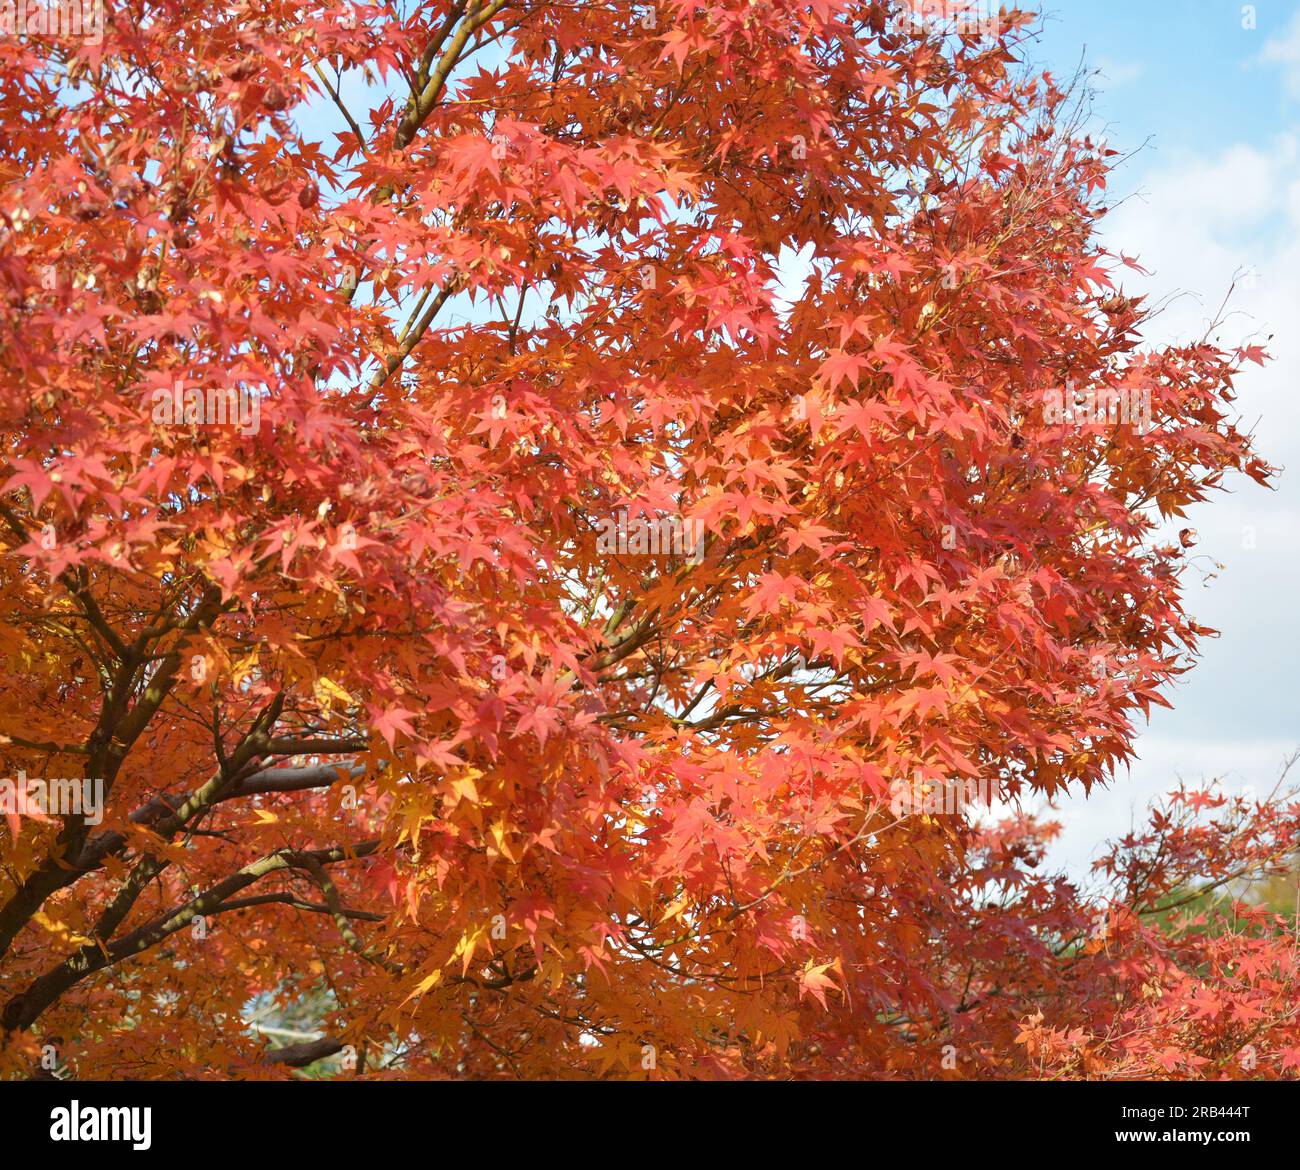 foglie di acero rosso come fuoco sul ramo nel soleggiato pomeriggio Foto Stock